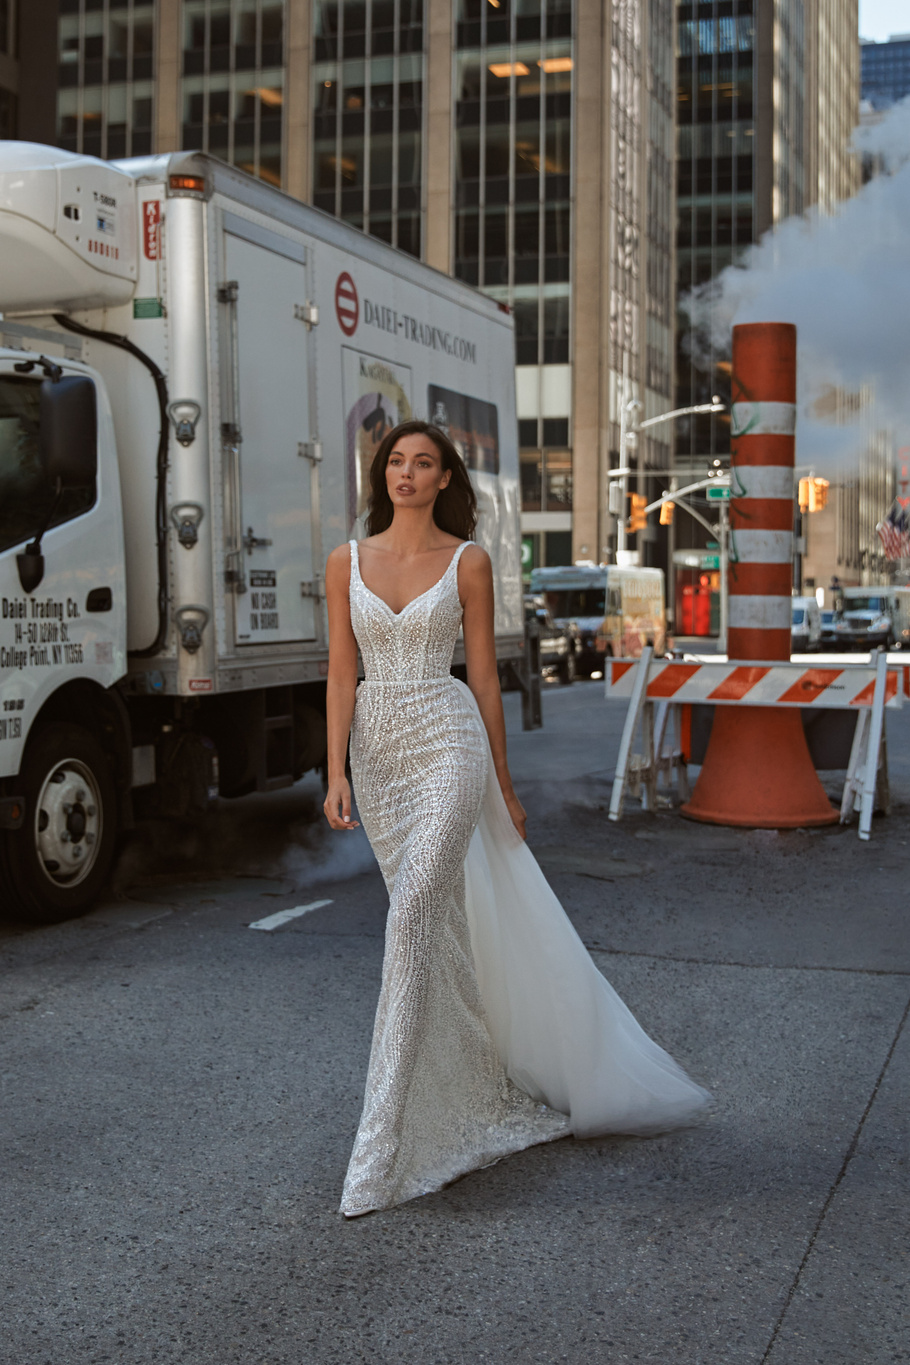 Купить свадебное платье «Бланш» Вона из коллекции Любовь в городе 2022 года в салоне «Мэри Трюфель»